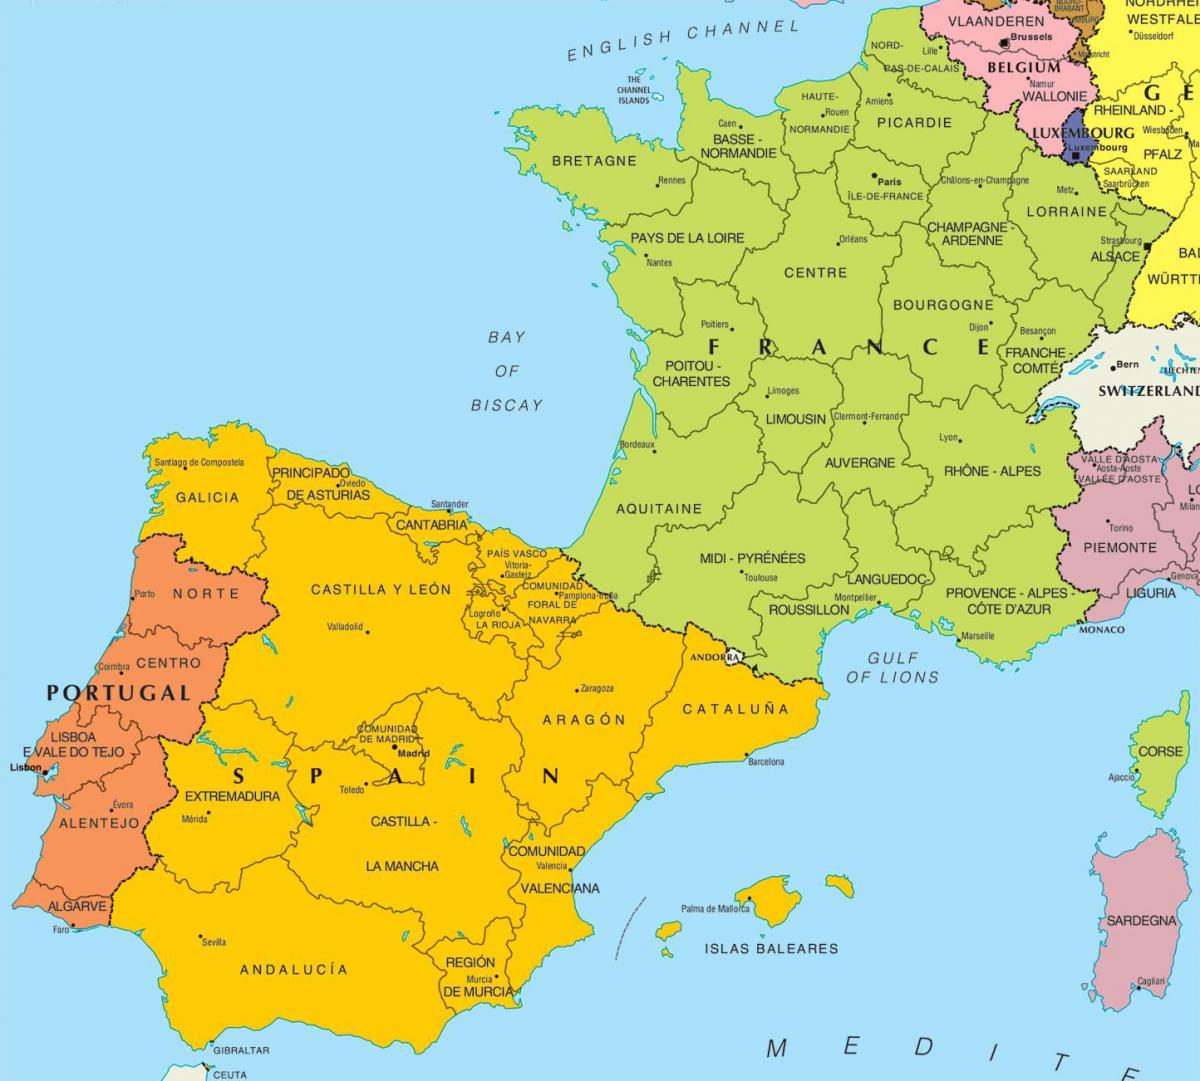 Mappa della Spagna e dei paesi confinanti